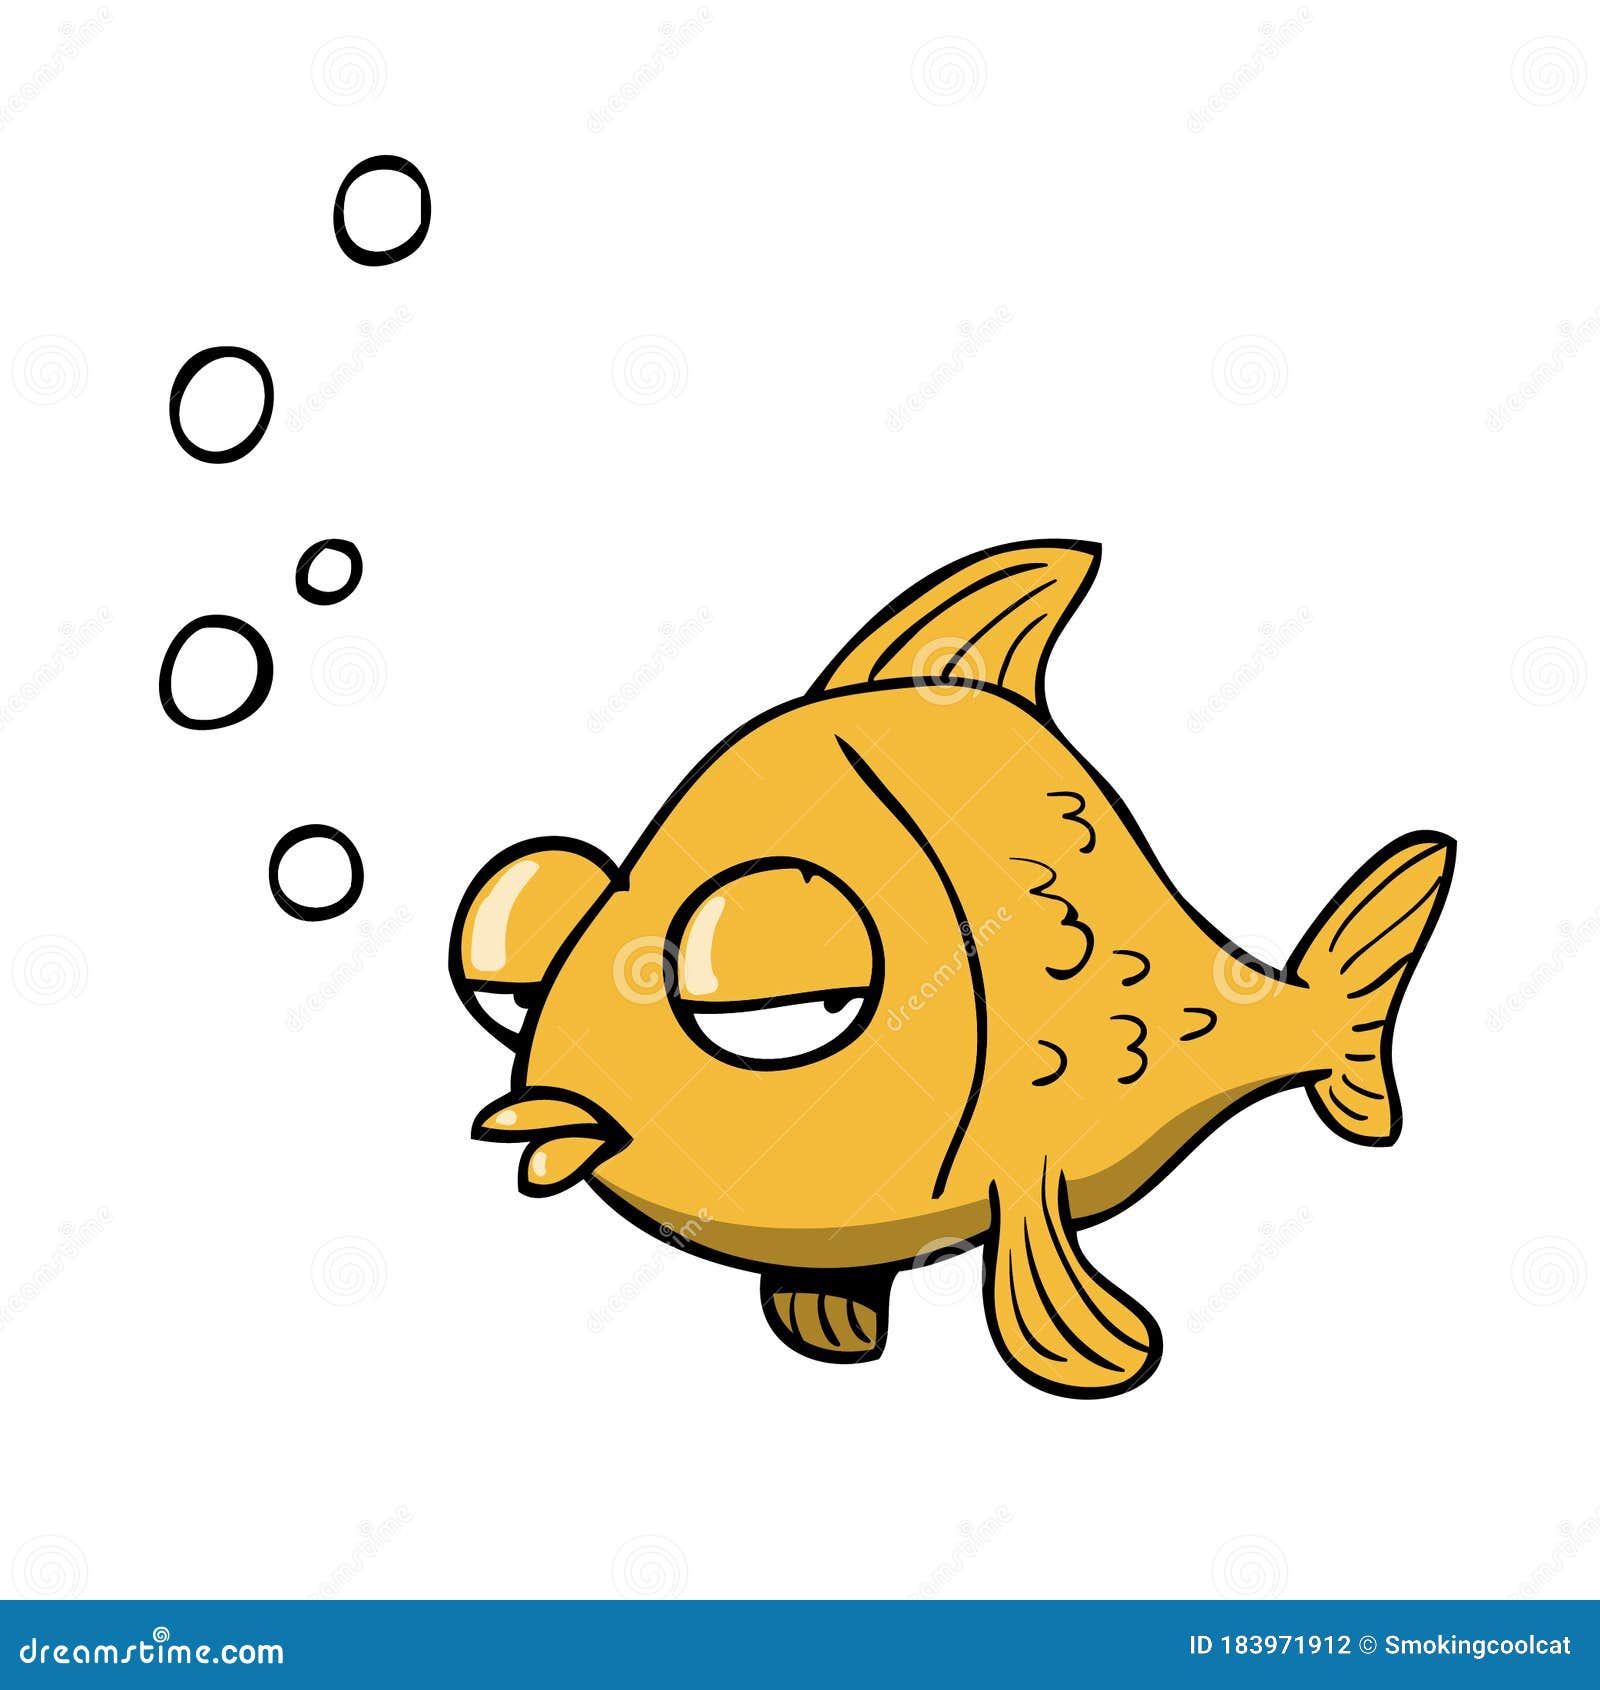 Cartoon Fish Blowing Bubbles Stock Illustrations – 50 Cartoon Fish Blowing  Bubbles Stock Illustrations, Vectors & Clipart - Dreamstime